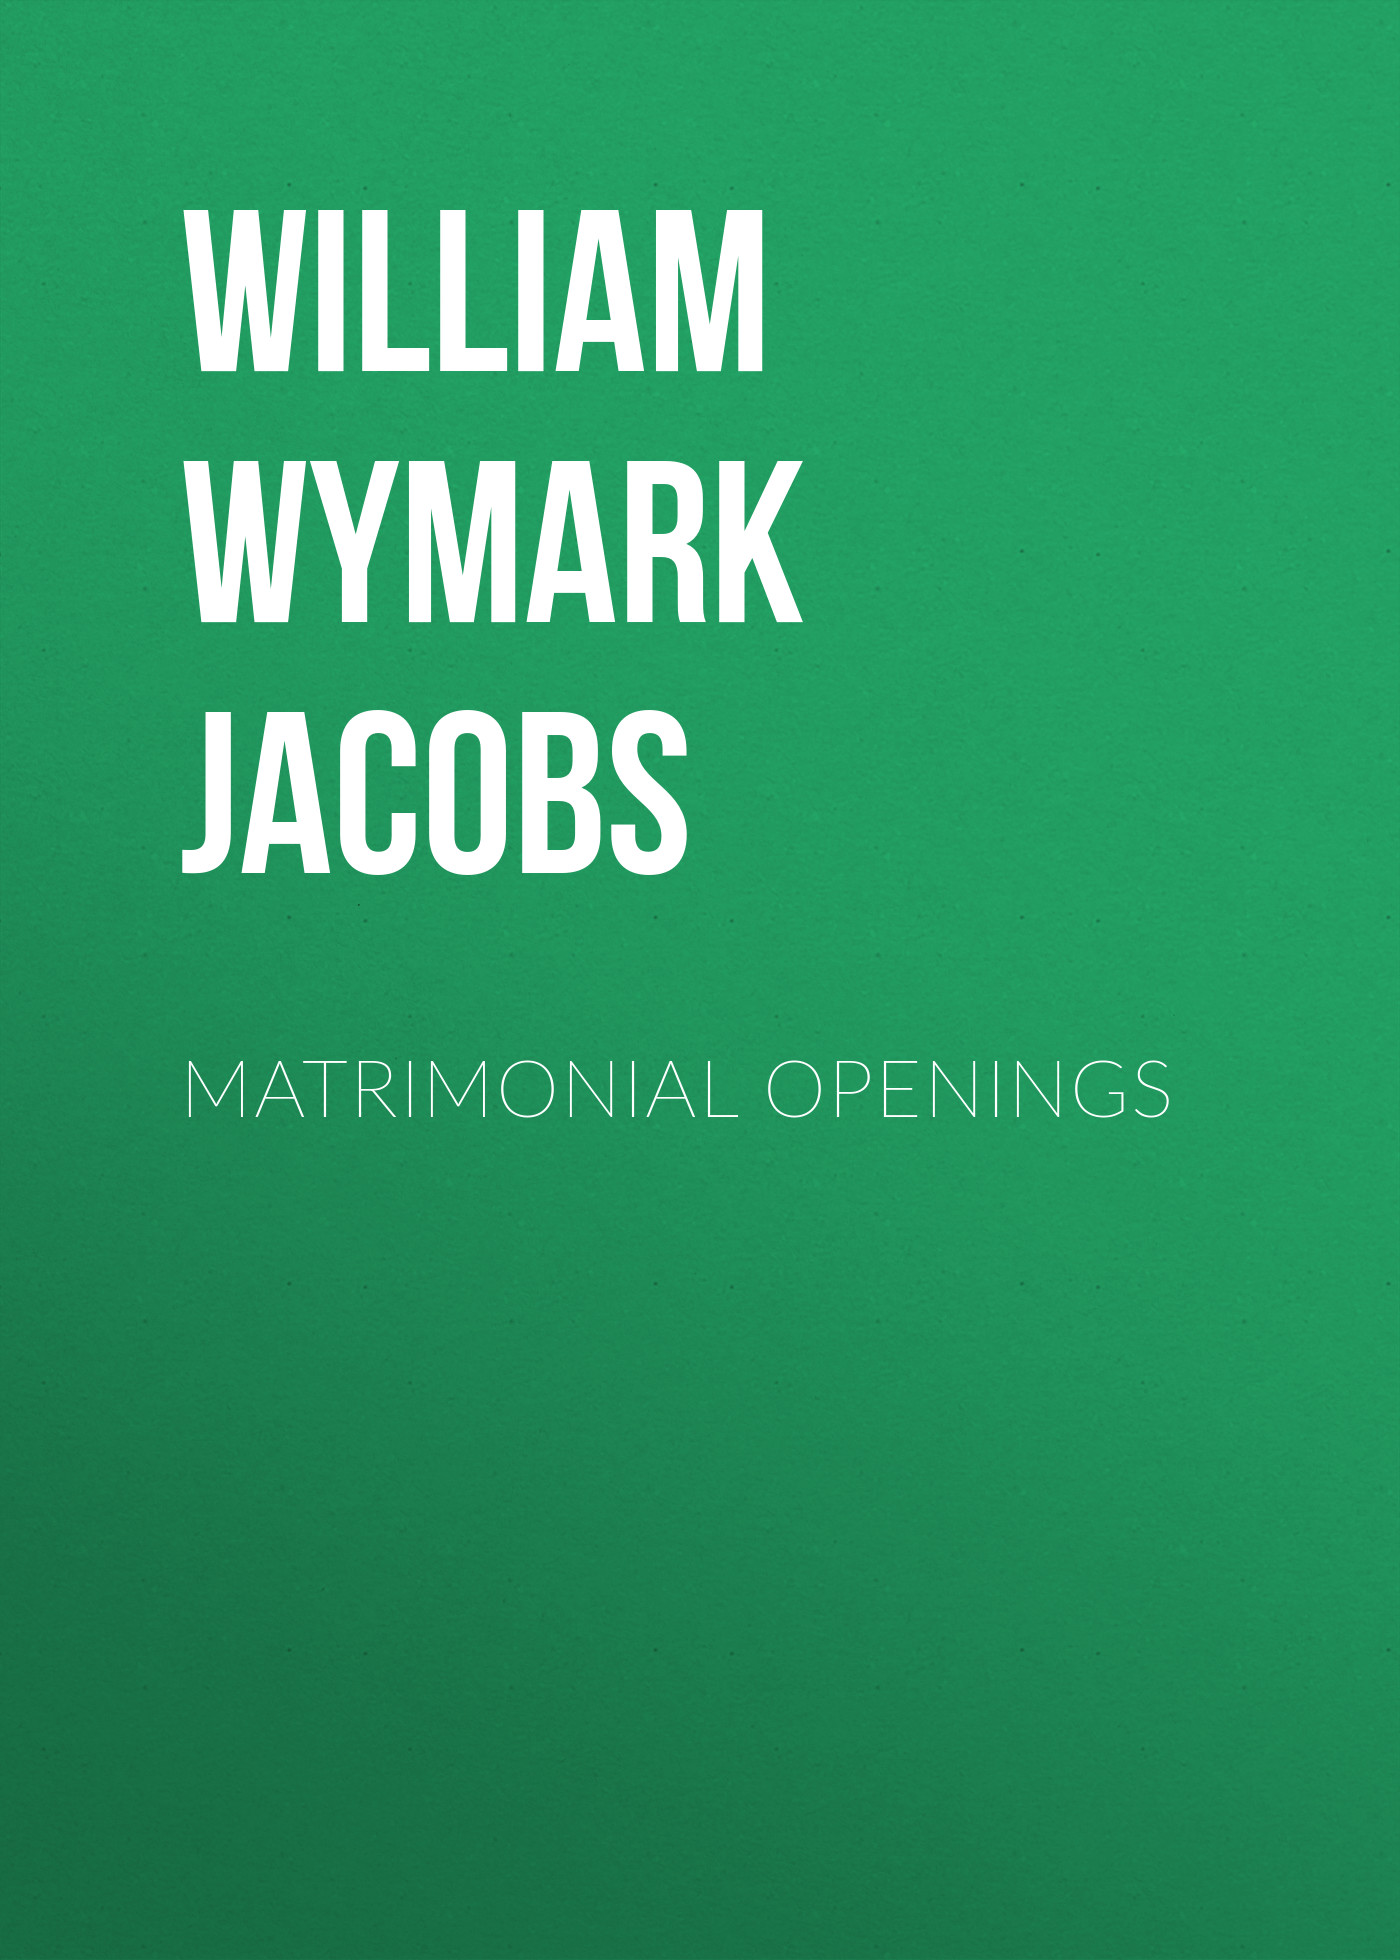 Книга Matrimonial Openings из серии , созданная William Wymark Jacobs, может относится к жанру Зарубежная классика, Зарубежная старинная литература. Стоимость электронной книги Matrimonial Openings с идентификатором 34844070 составляет 0 руб.